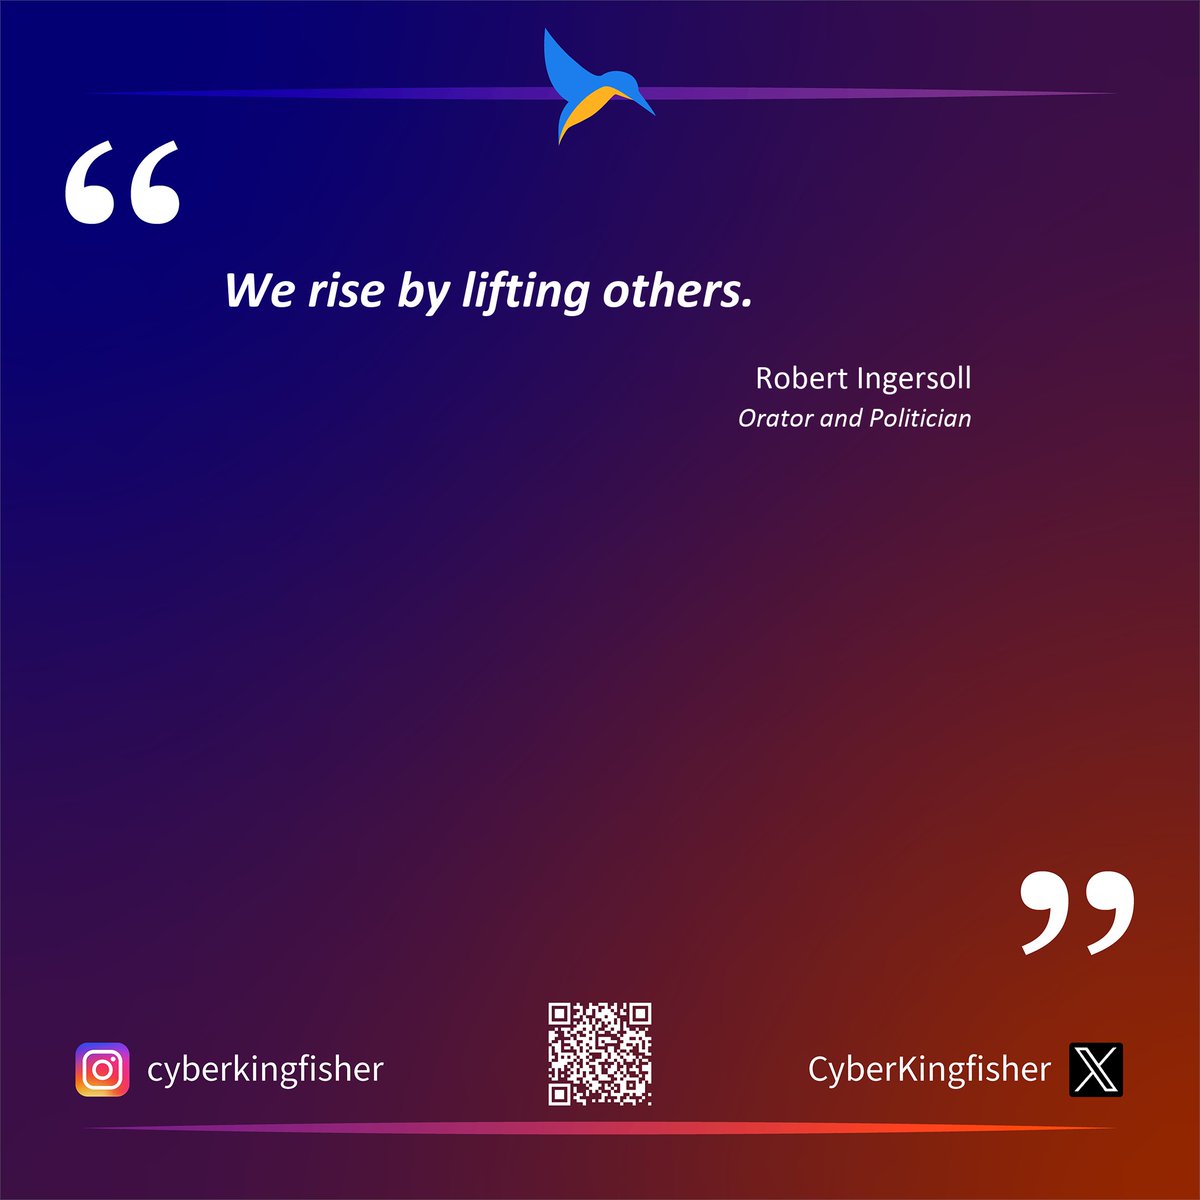 Robert Ingersoll on leadership.

#Leadership #GrowthMindset #LeadershipRise #LiftOthersLeadership #LeadershipQuotes #EmpoweringLeadership #RisingTogether